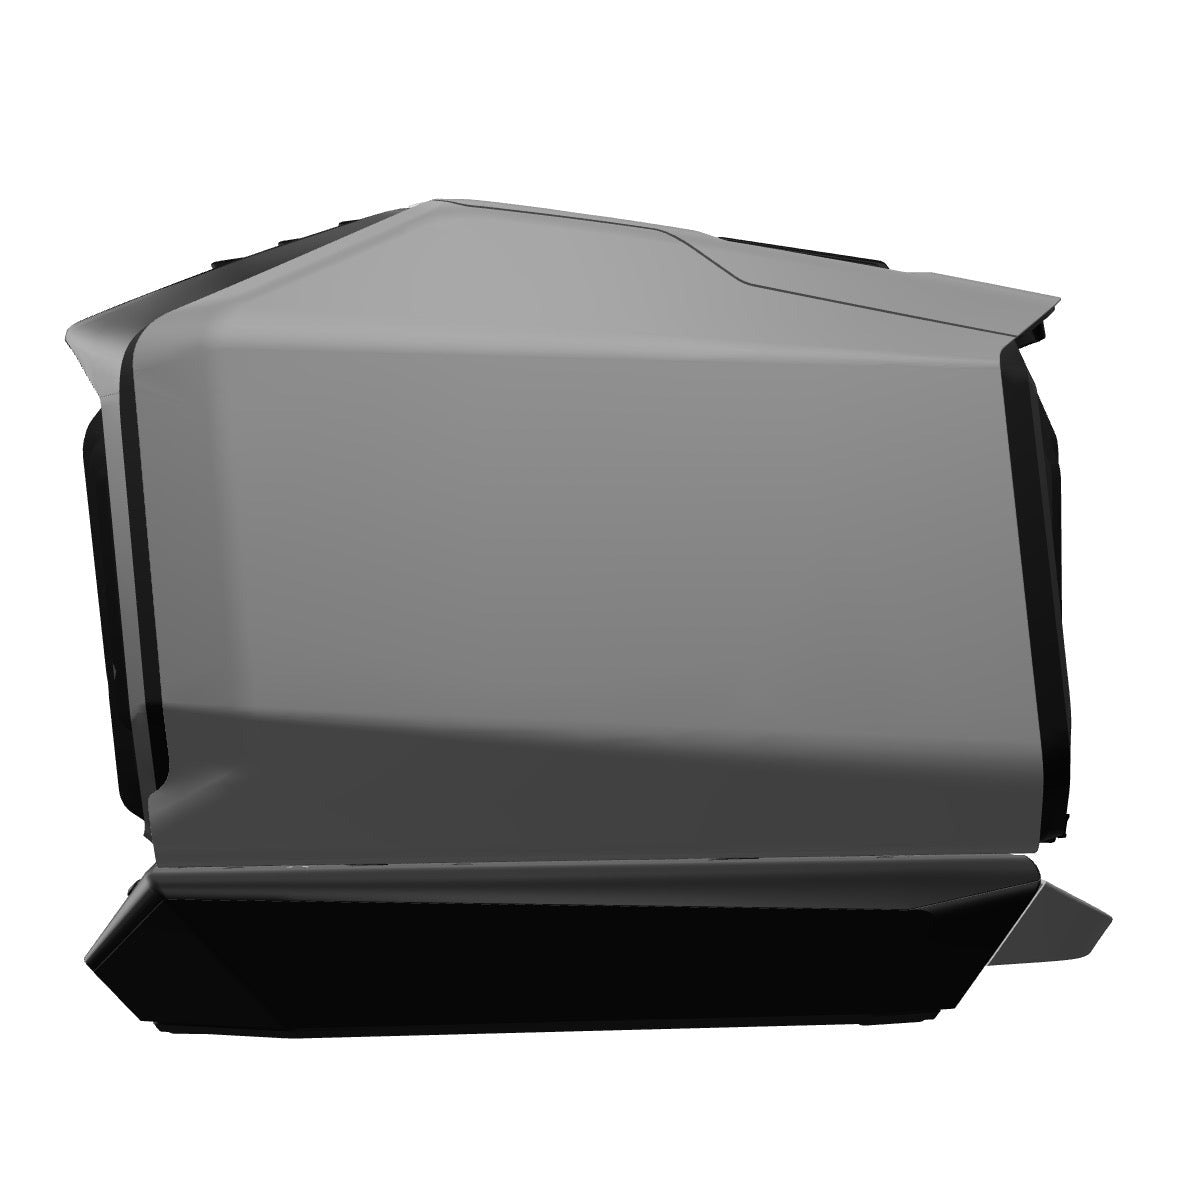 EcoFlow |WAVE 2 Portable Air Conditioner